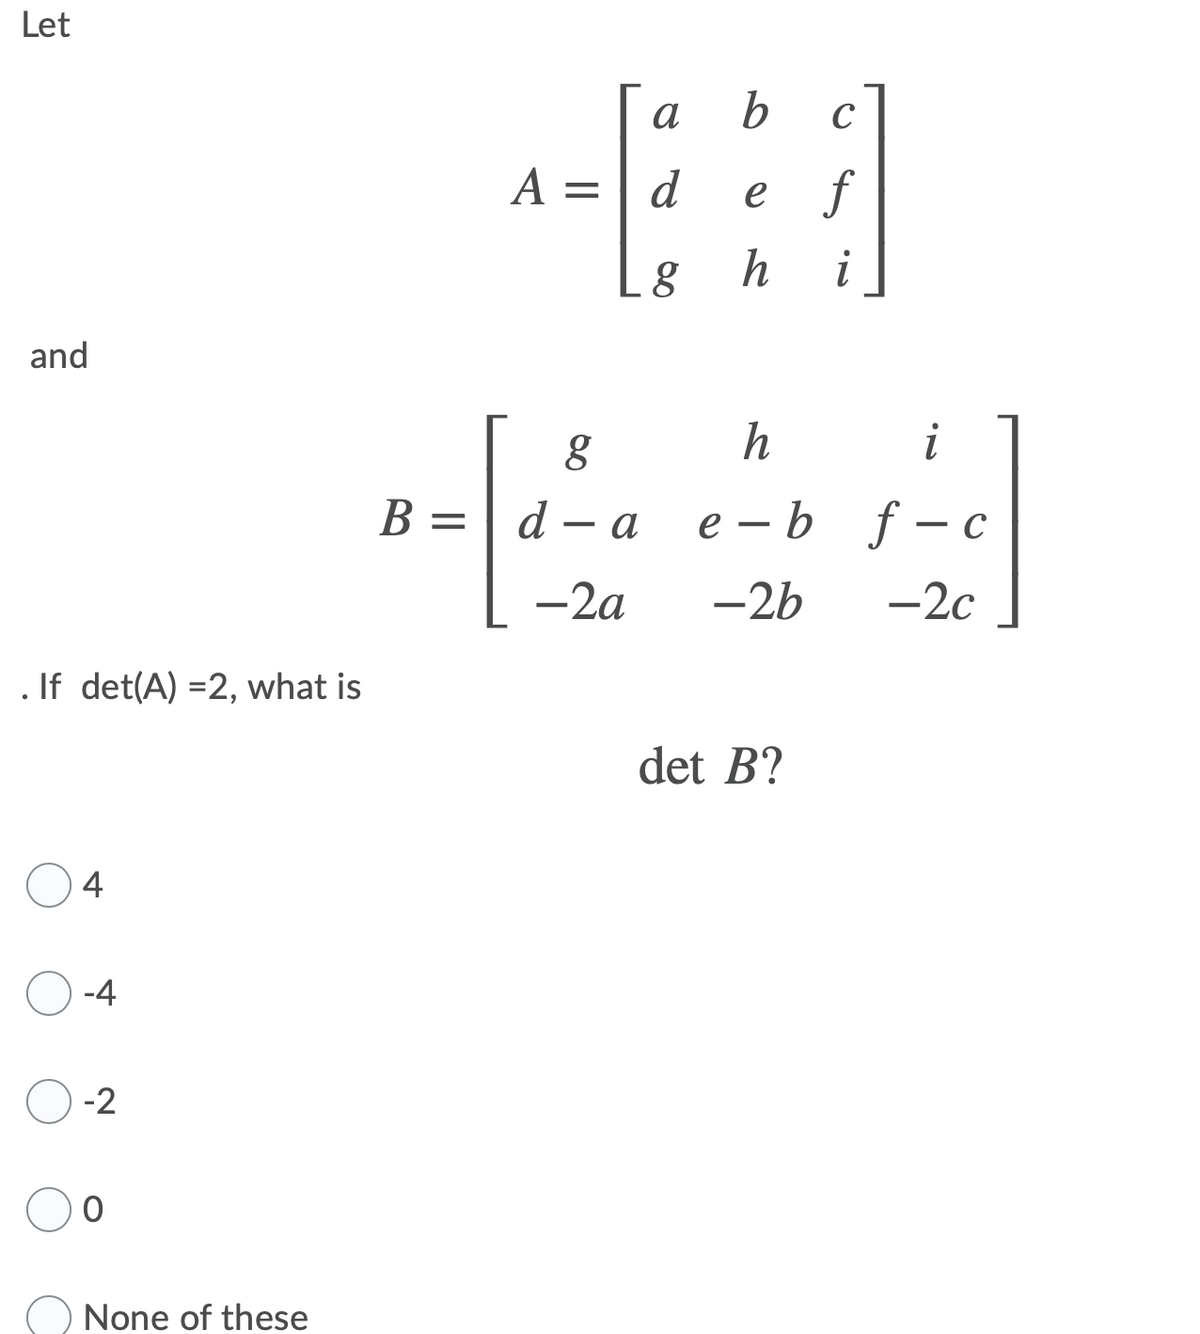 Let
a
b
C
A =
d
e f
h
and
i
В -
d — а
е —b f-с
-2a
-2b
-2c
If det(A) =2, what is
det B?
4
-4
-2
None of these
